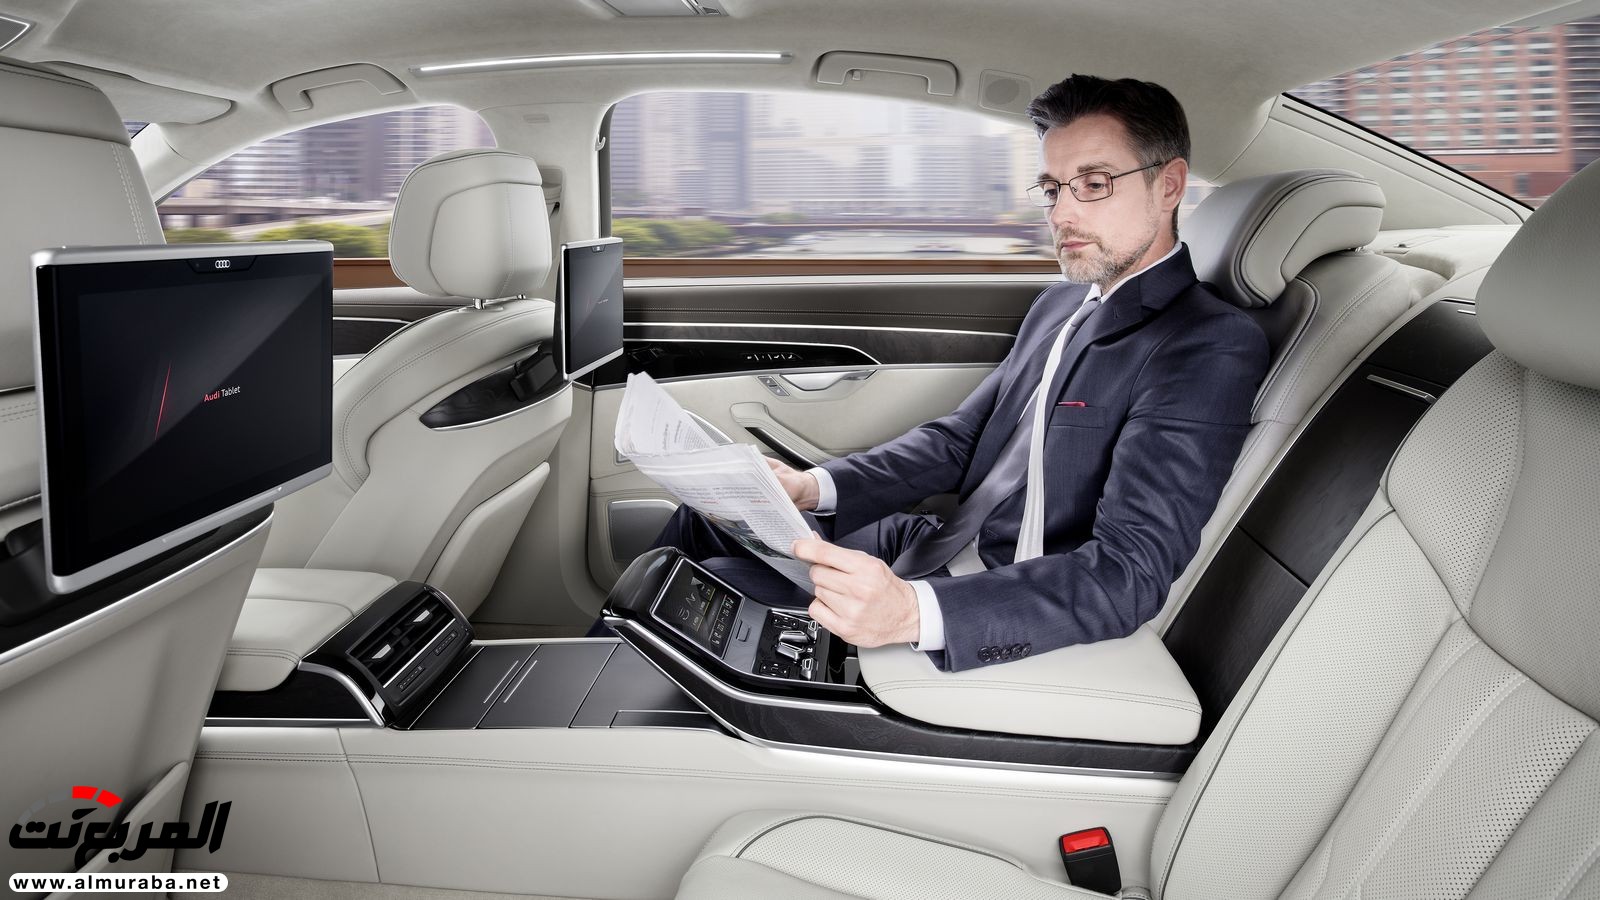 أودي A8 2018 الجديدة كلياً تكشف نفسها بتصميم وتقنيات متطورة "معلومات + 100 صورة" Audi A8 35